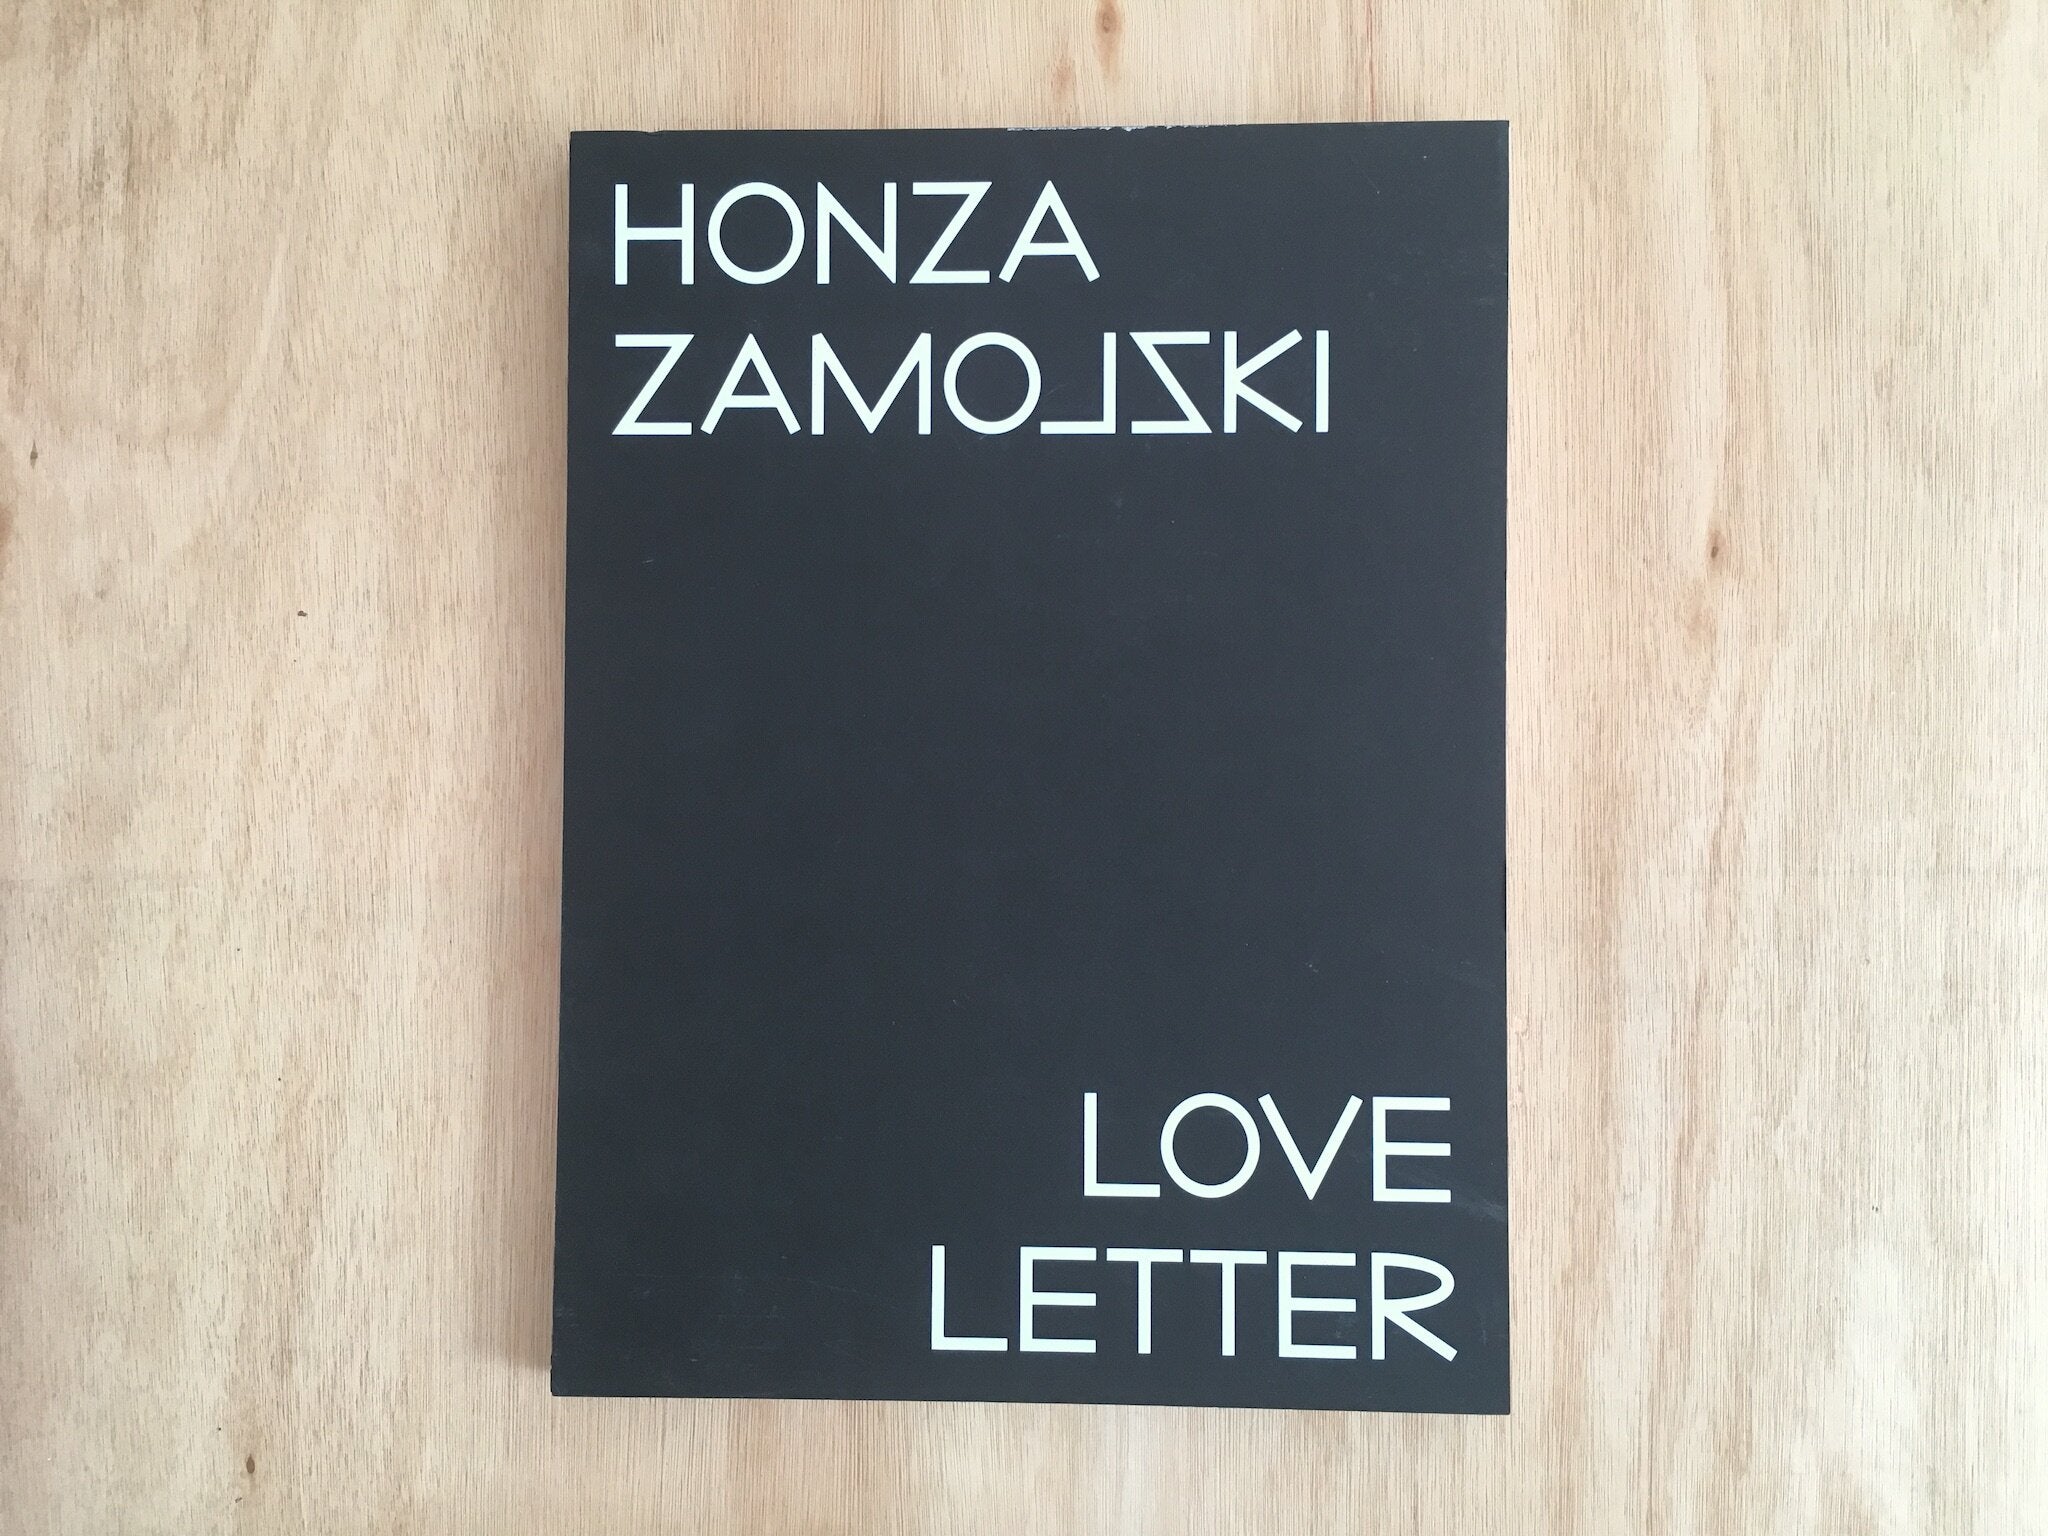 LOVE LETTER By Honza Zamojski